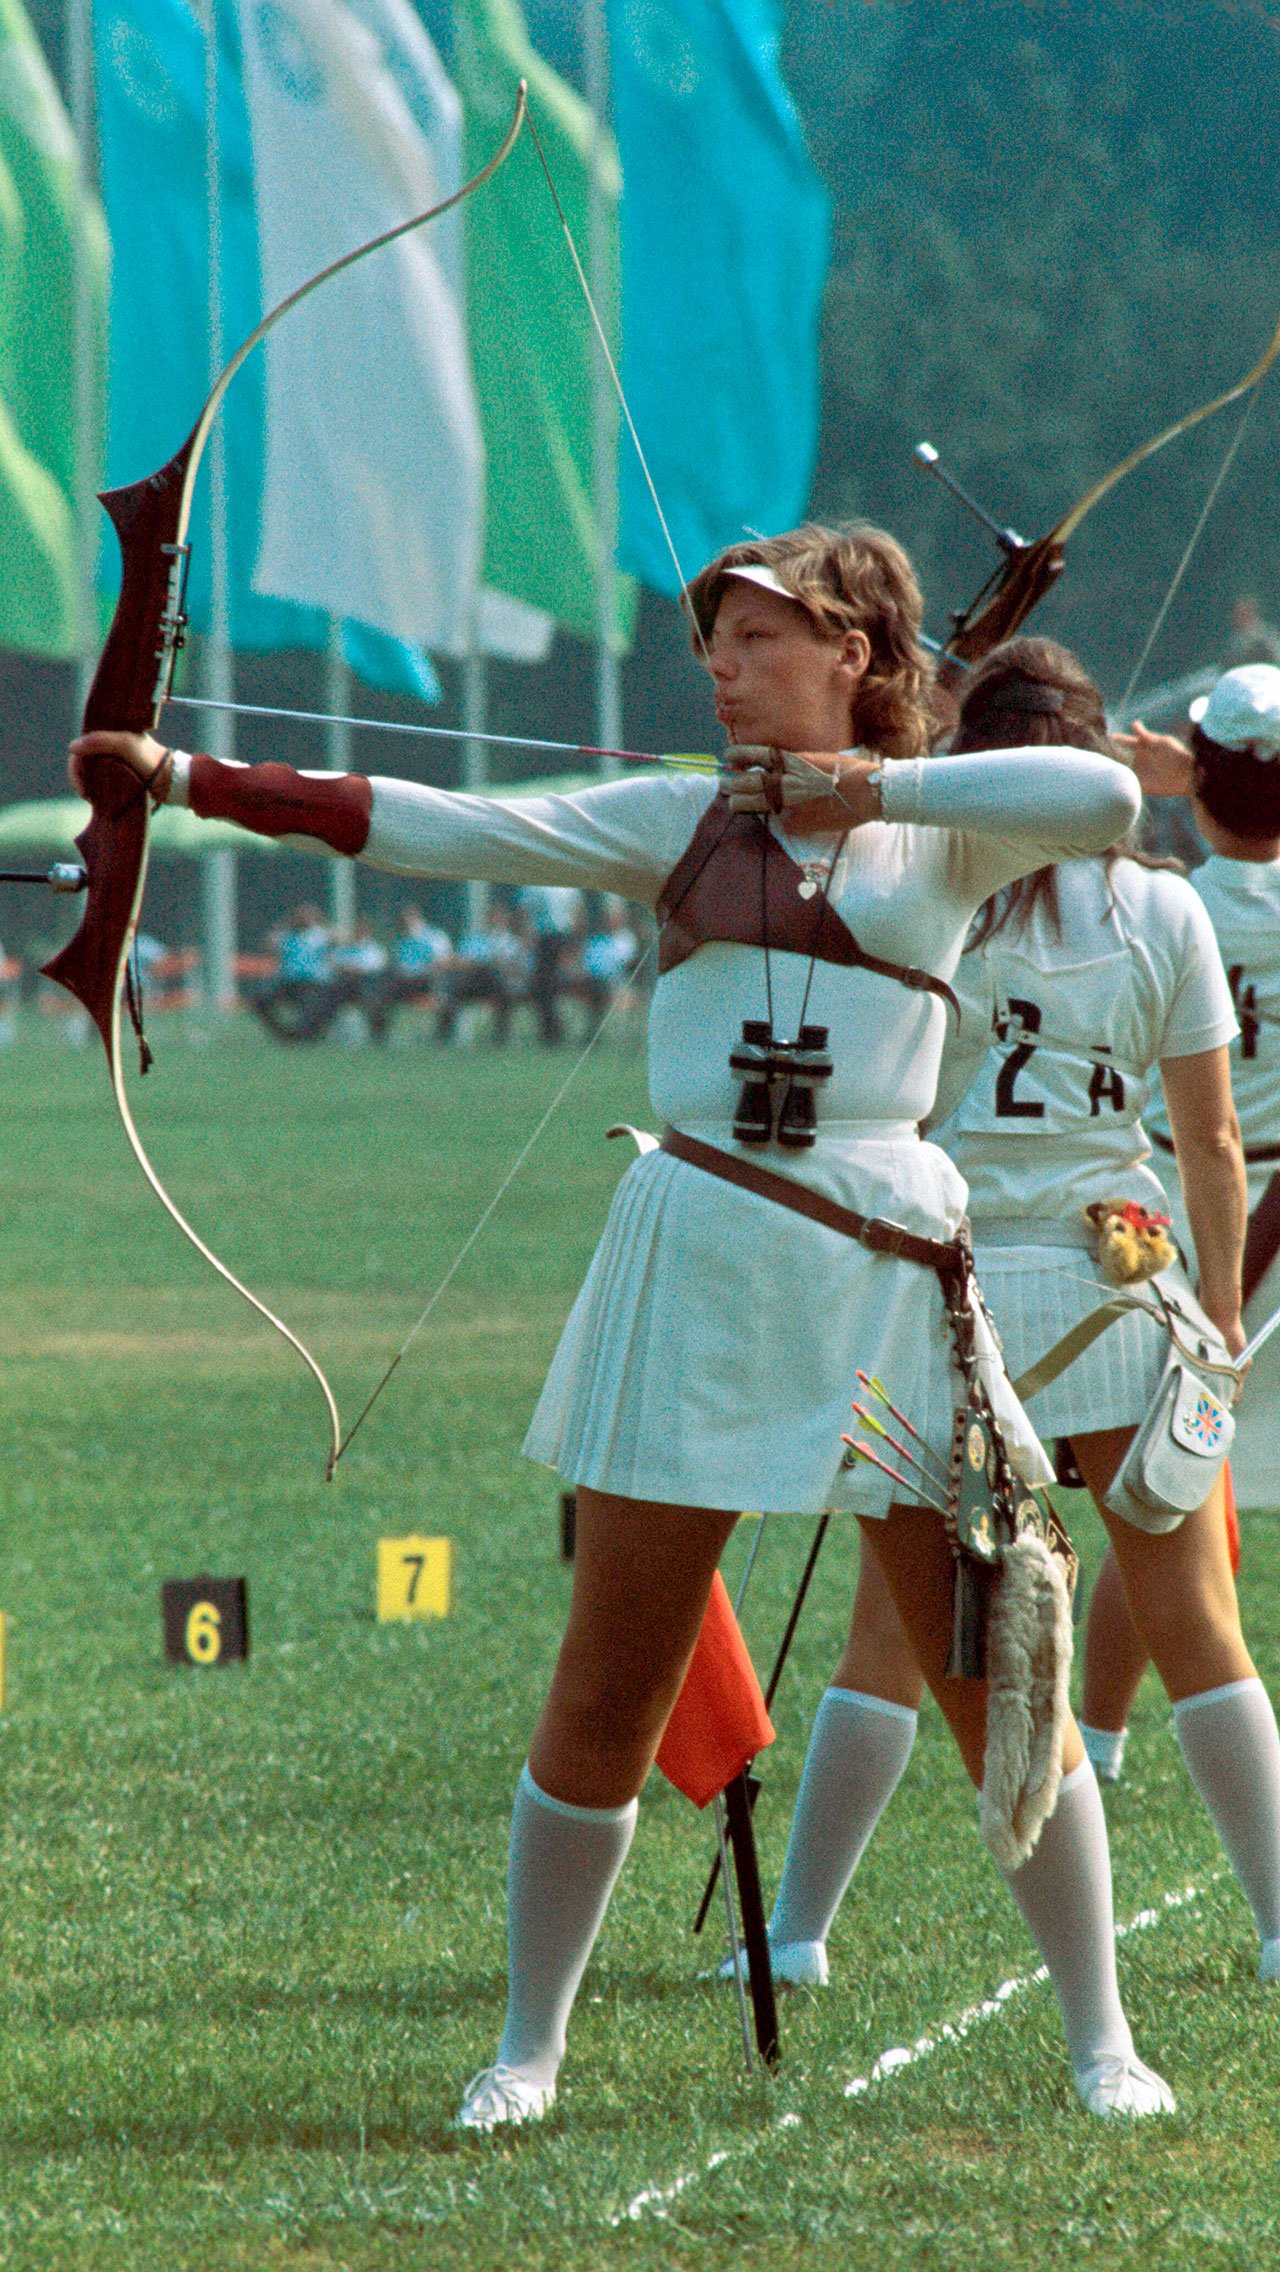 Стрельба из лука была исключена из программы Игр с 1924 года из-за отсутствия чётких правил и требований к оборудованию. Сейчас на Олимпиаде есть один класс — классический или «олимпик».